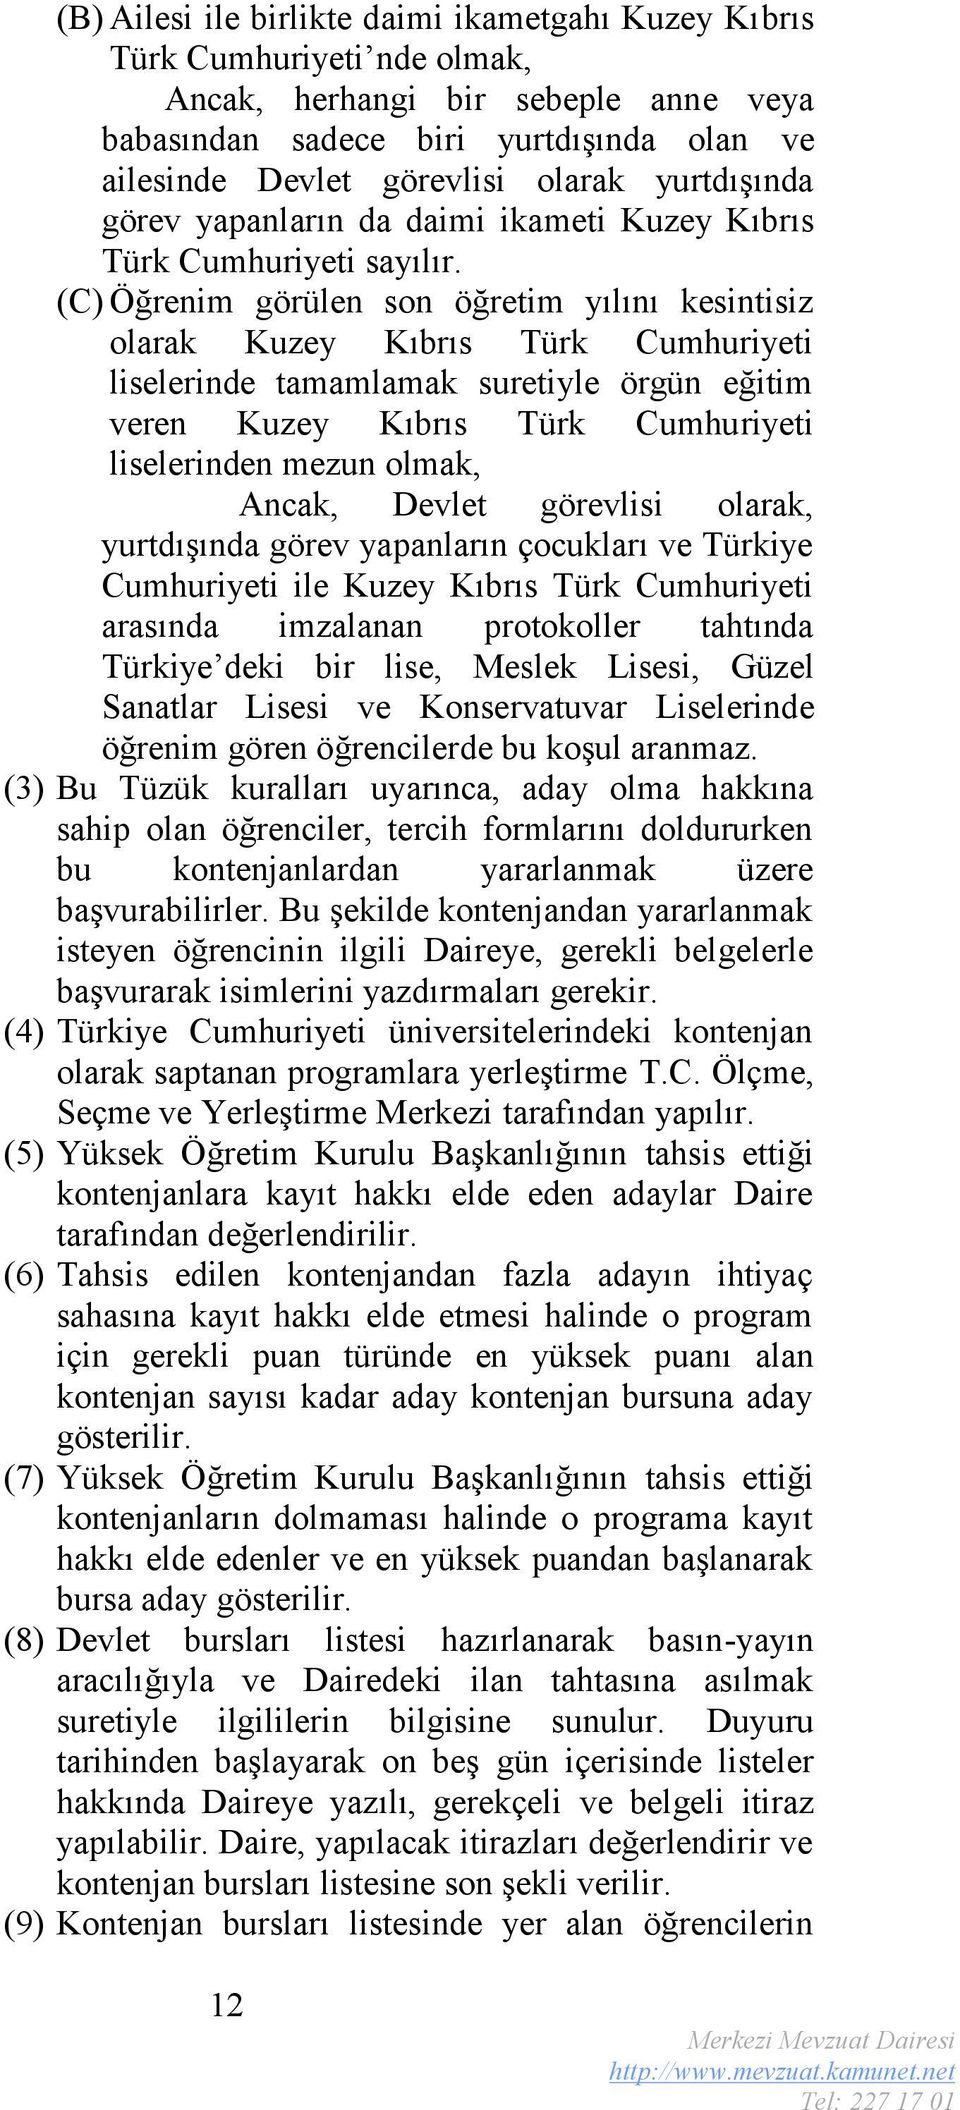 (C) Öğrenim görülen son öğretim yılını kesintisiz olarak Kuzey Kıbrıs Türk Cumhuriyeti liselerinde tamamlamak suretiyle örgün eğitim veren Kuzey Kıbrıs Türk Cumhuriyeti liselerinden mezun olmak,